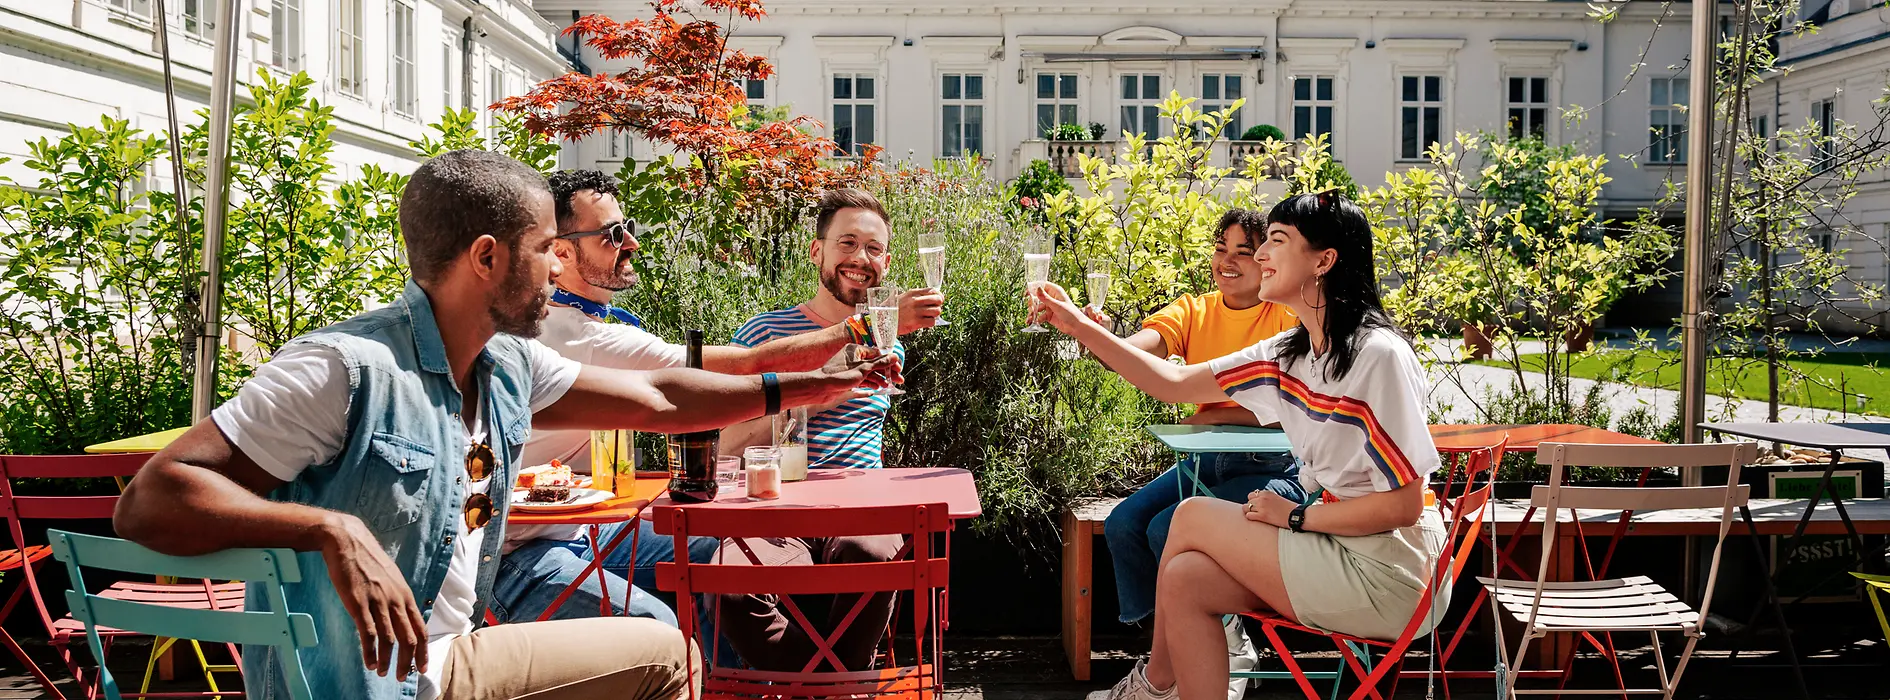 Grup de tineri beau împreună pe o terasă stradală